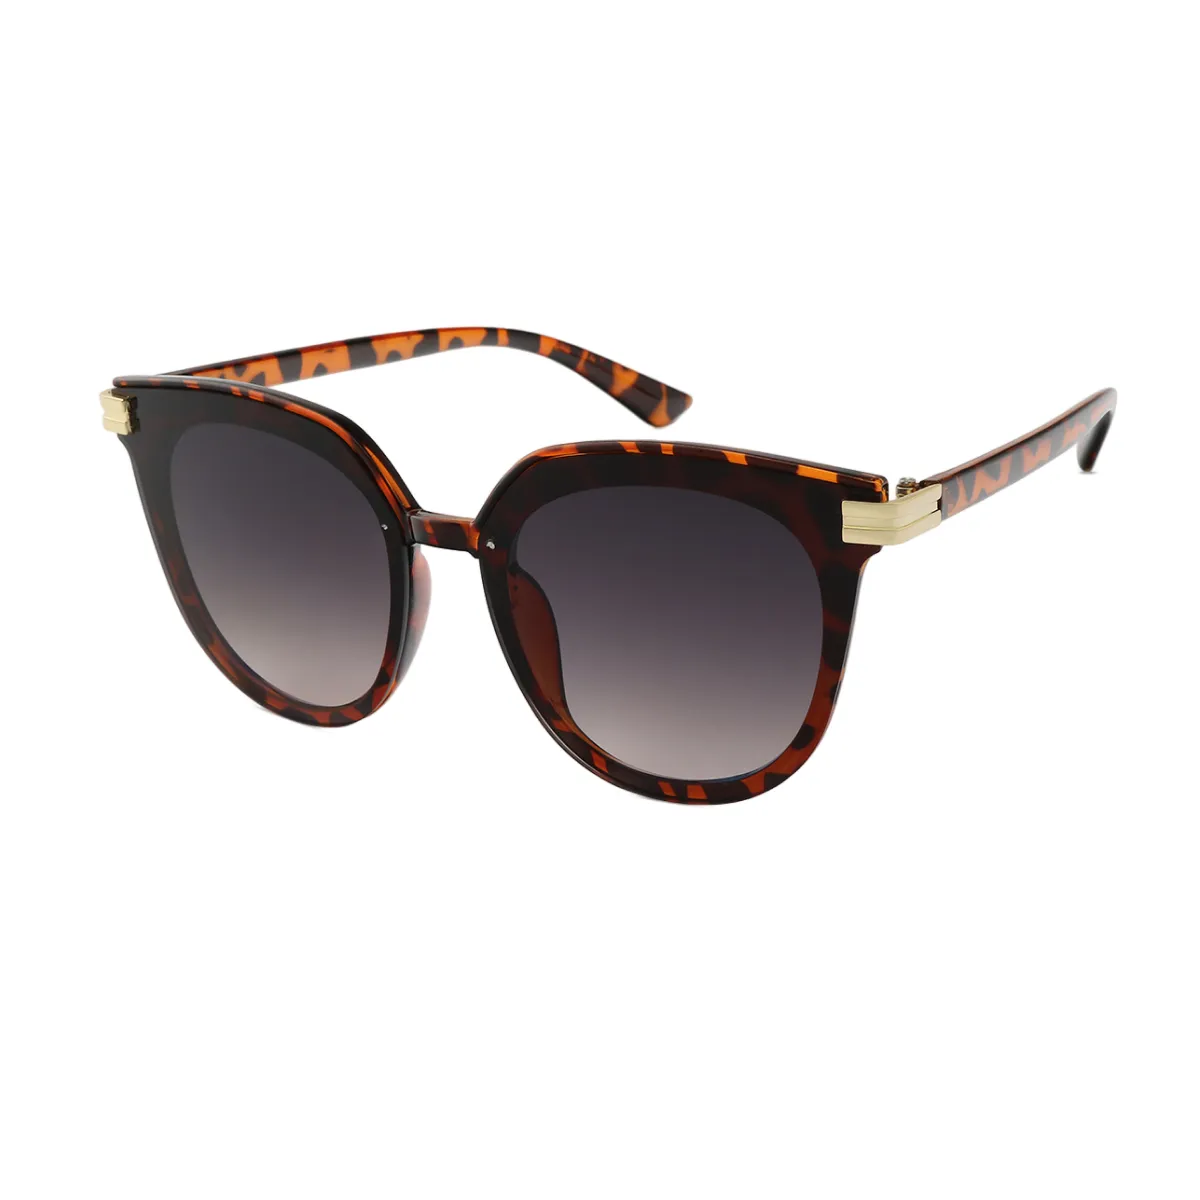 Lucile - Cat-eye Tortoiseshell Sunglasses for Women